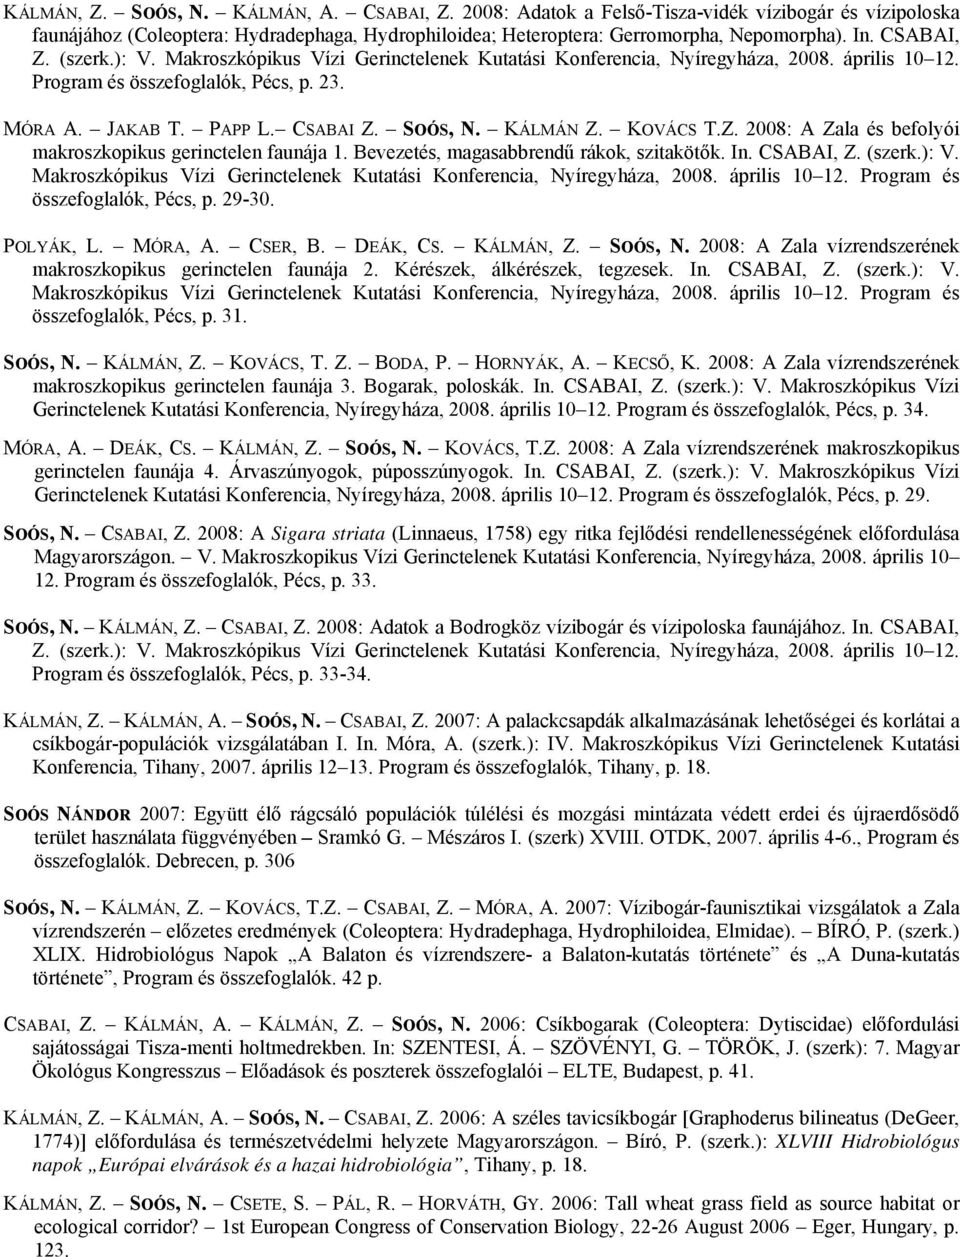 KÁLMÁN Z. KOVÁCS T.Z. 2008: A Zala és befolyói makroszkopikus gerinctelen faunája 1. Bevezetés, magasabbrendű rákok, szitakötők. In. CSABAI, Z. (szerk.): V.